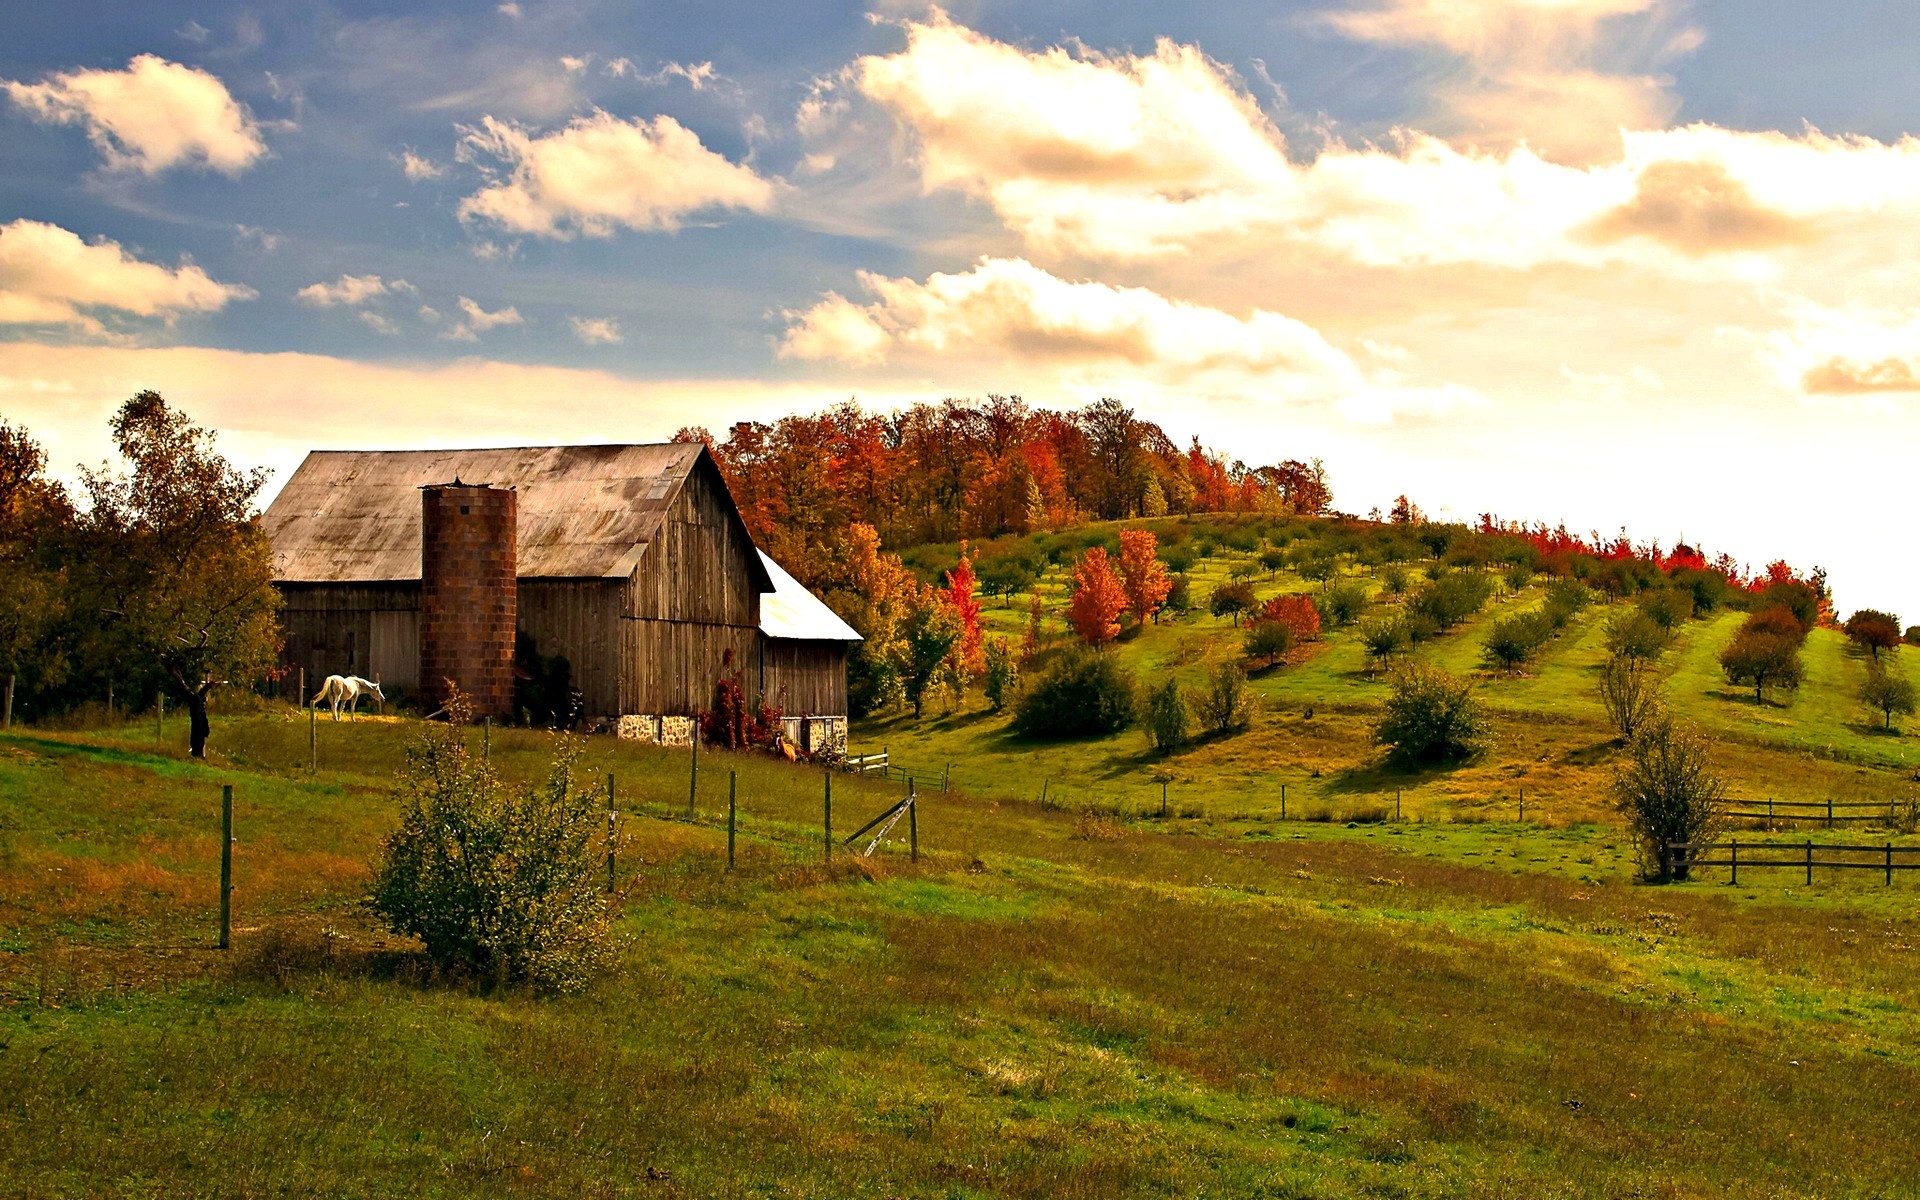 papel pintado de la casa de campo,naturaleza,paisaje natural,cielo,área rural,granero